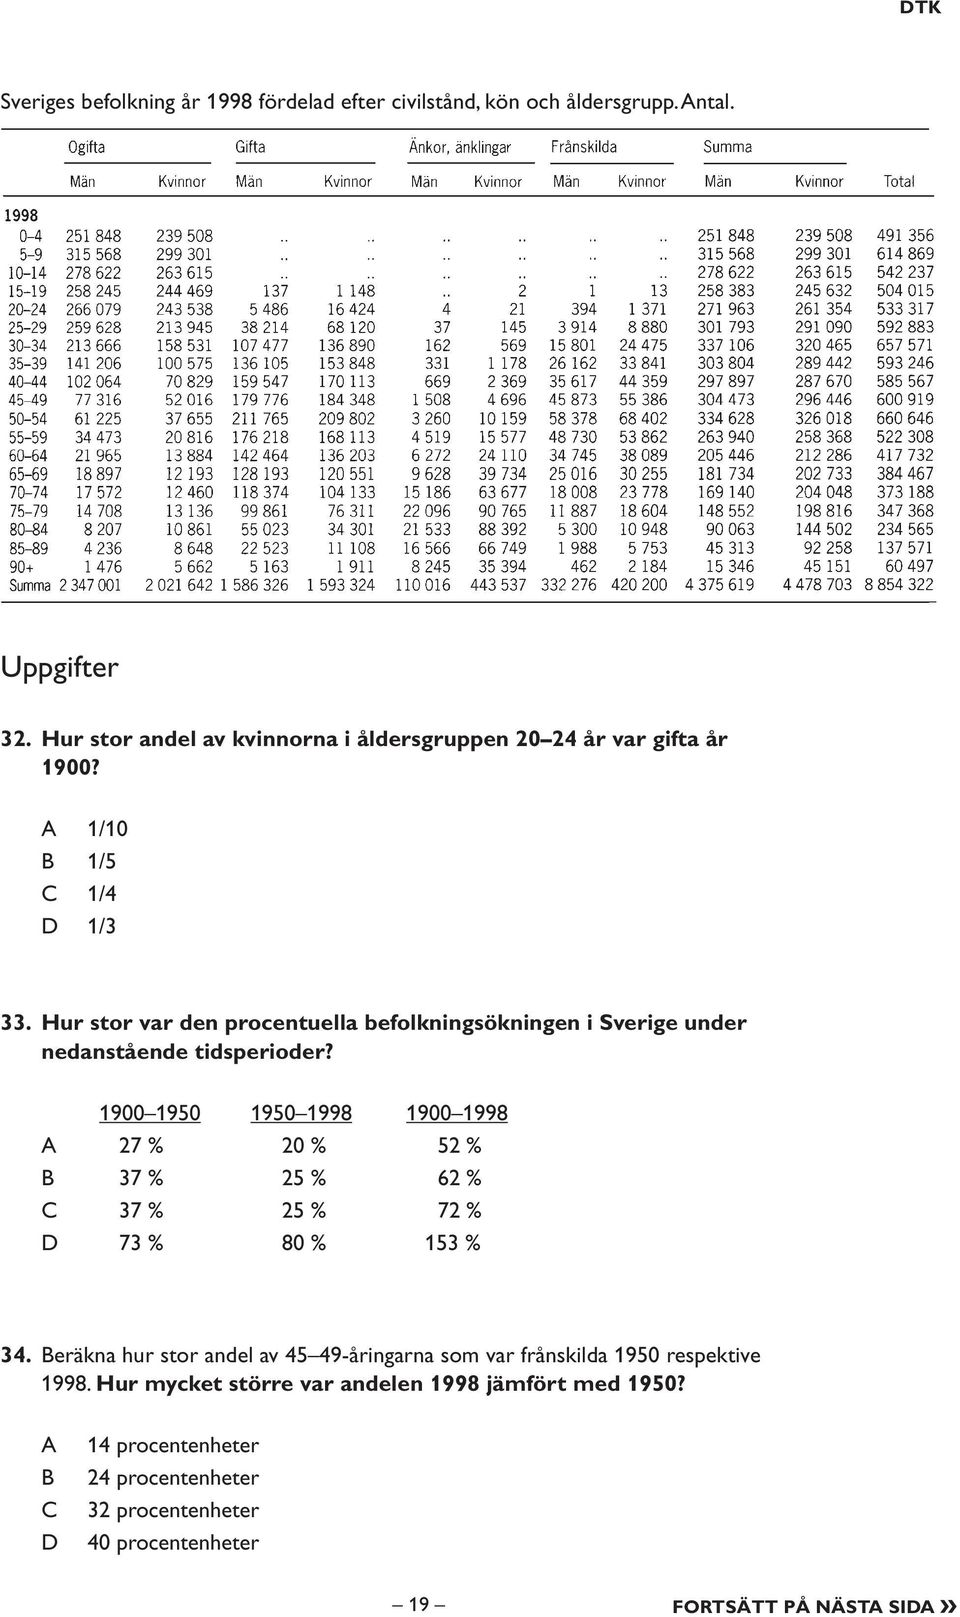 Hur stor var den procentuella befolkningsökningen i Sverige under nedanstående tidsperioder?